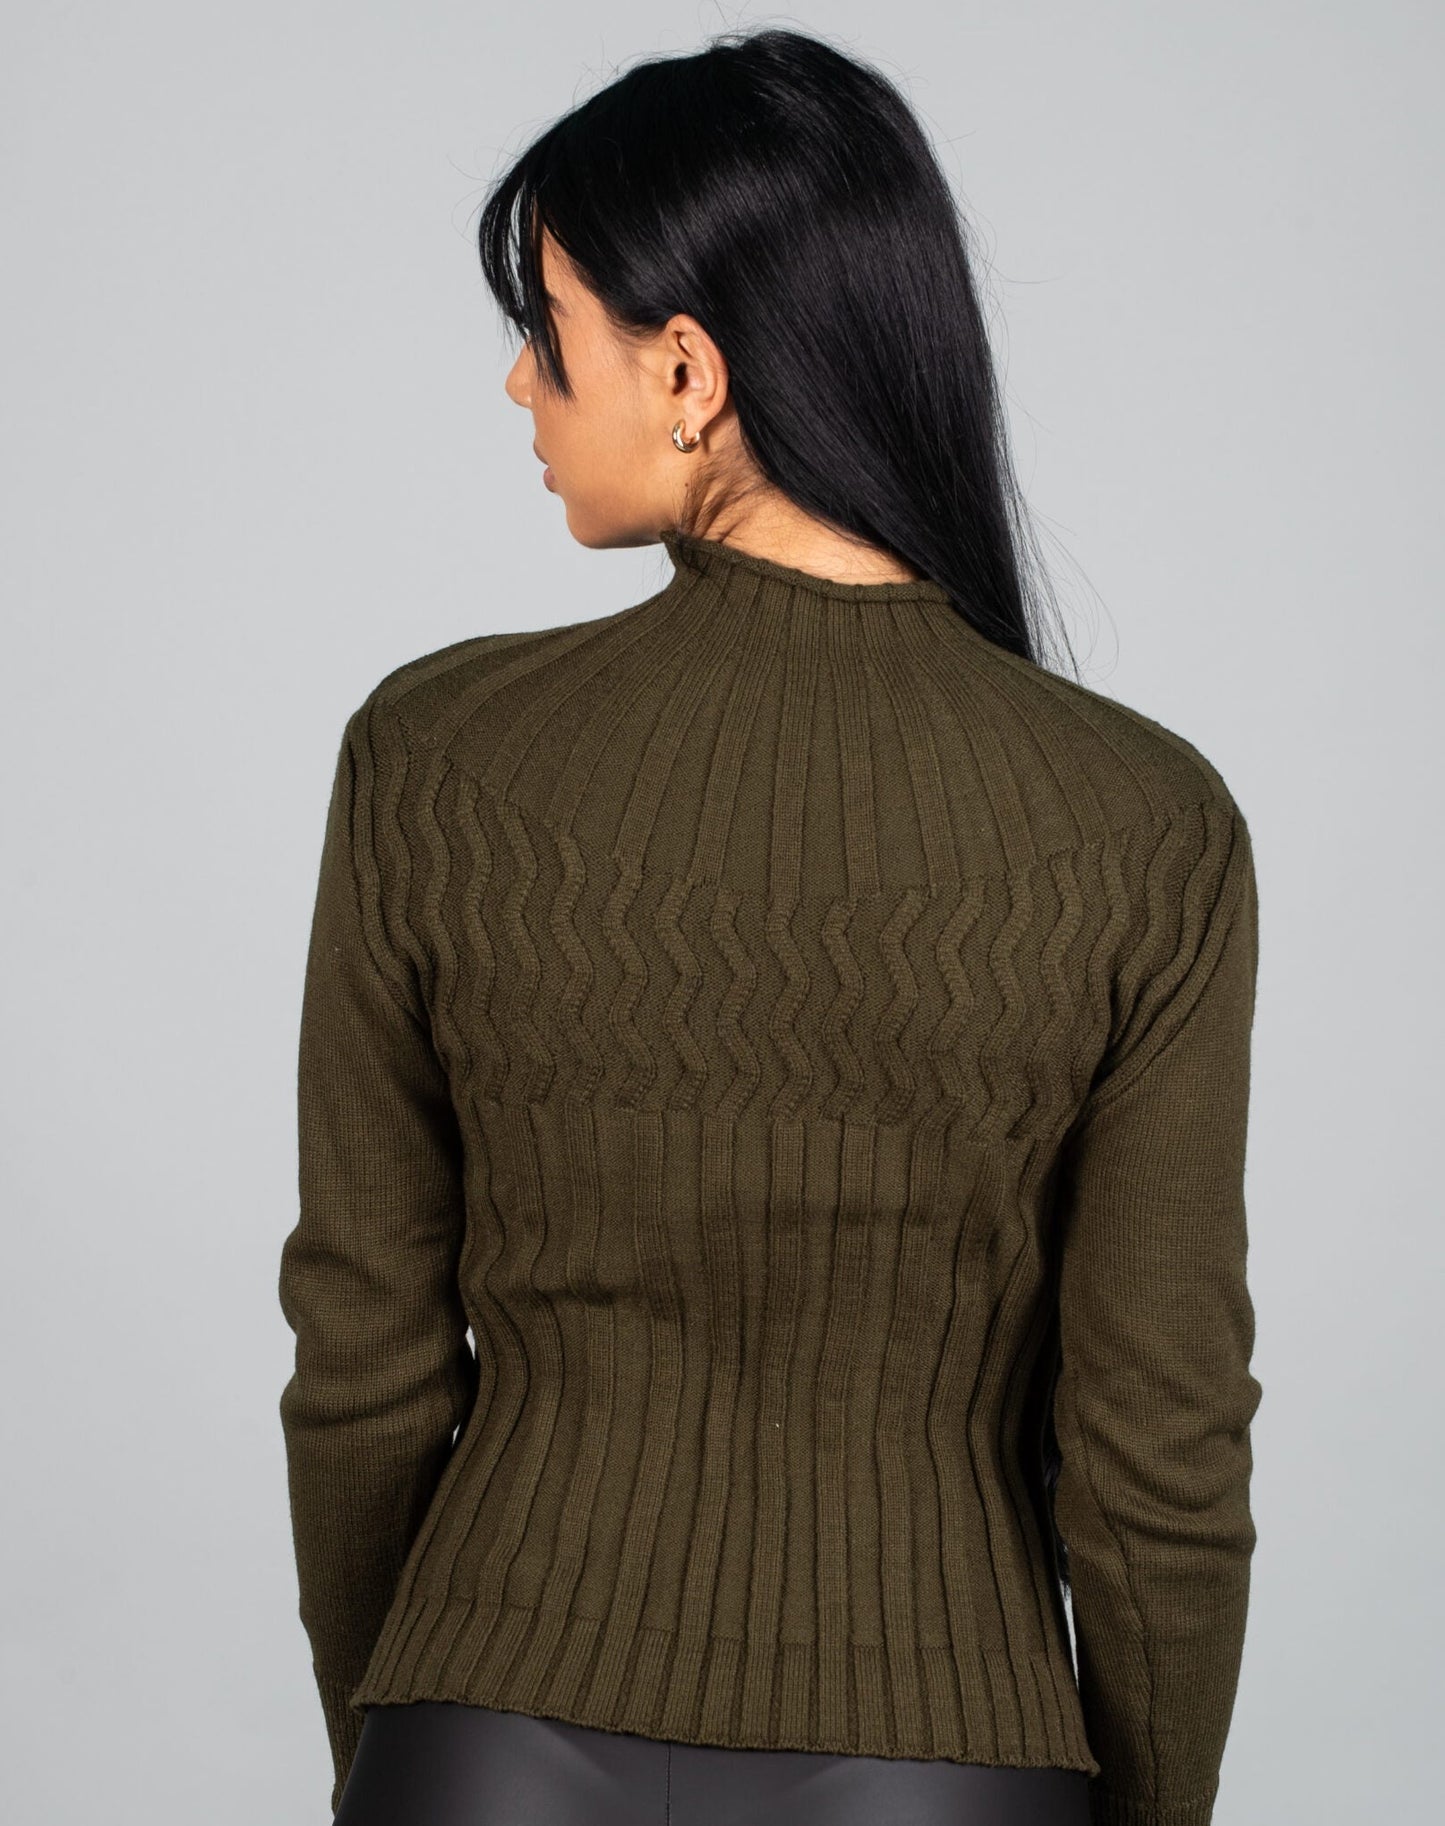 Дамска блуза LORNELA  https://bvseductive.com/products/дамска-блуза-lornela-2  60 % вискоза 40 % нилон топла дамска блуза в маслено зелен цвят модел по тялото с&nbsp; поло яка стил и топлина с блуза&nbsp;LORNELA